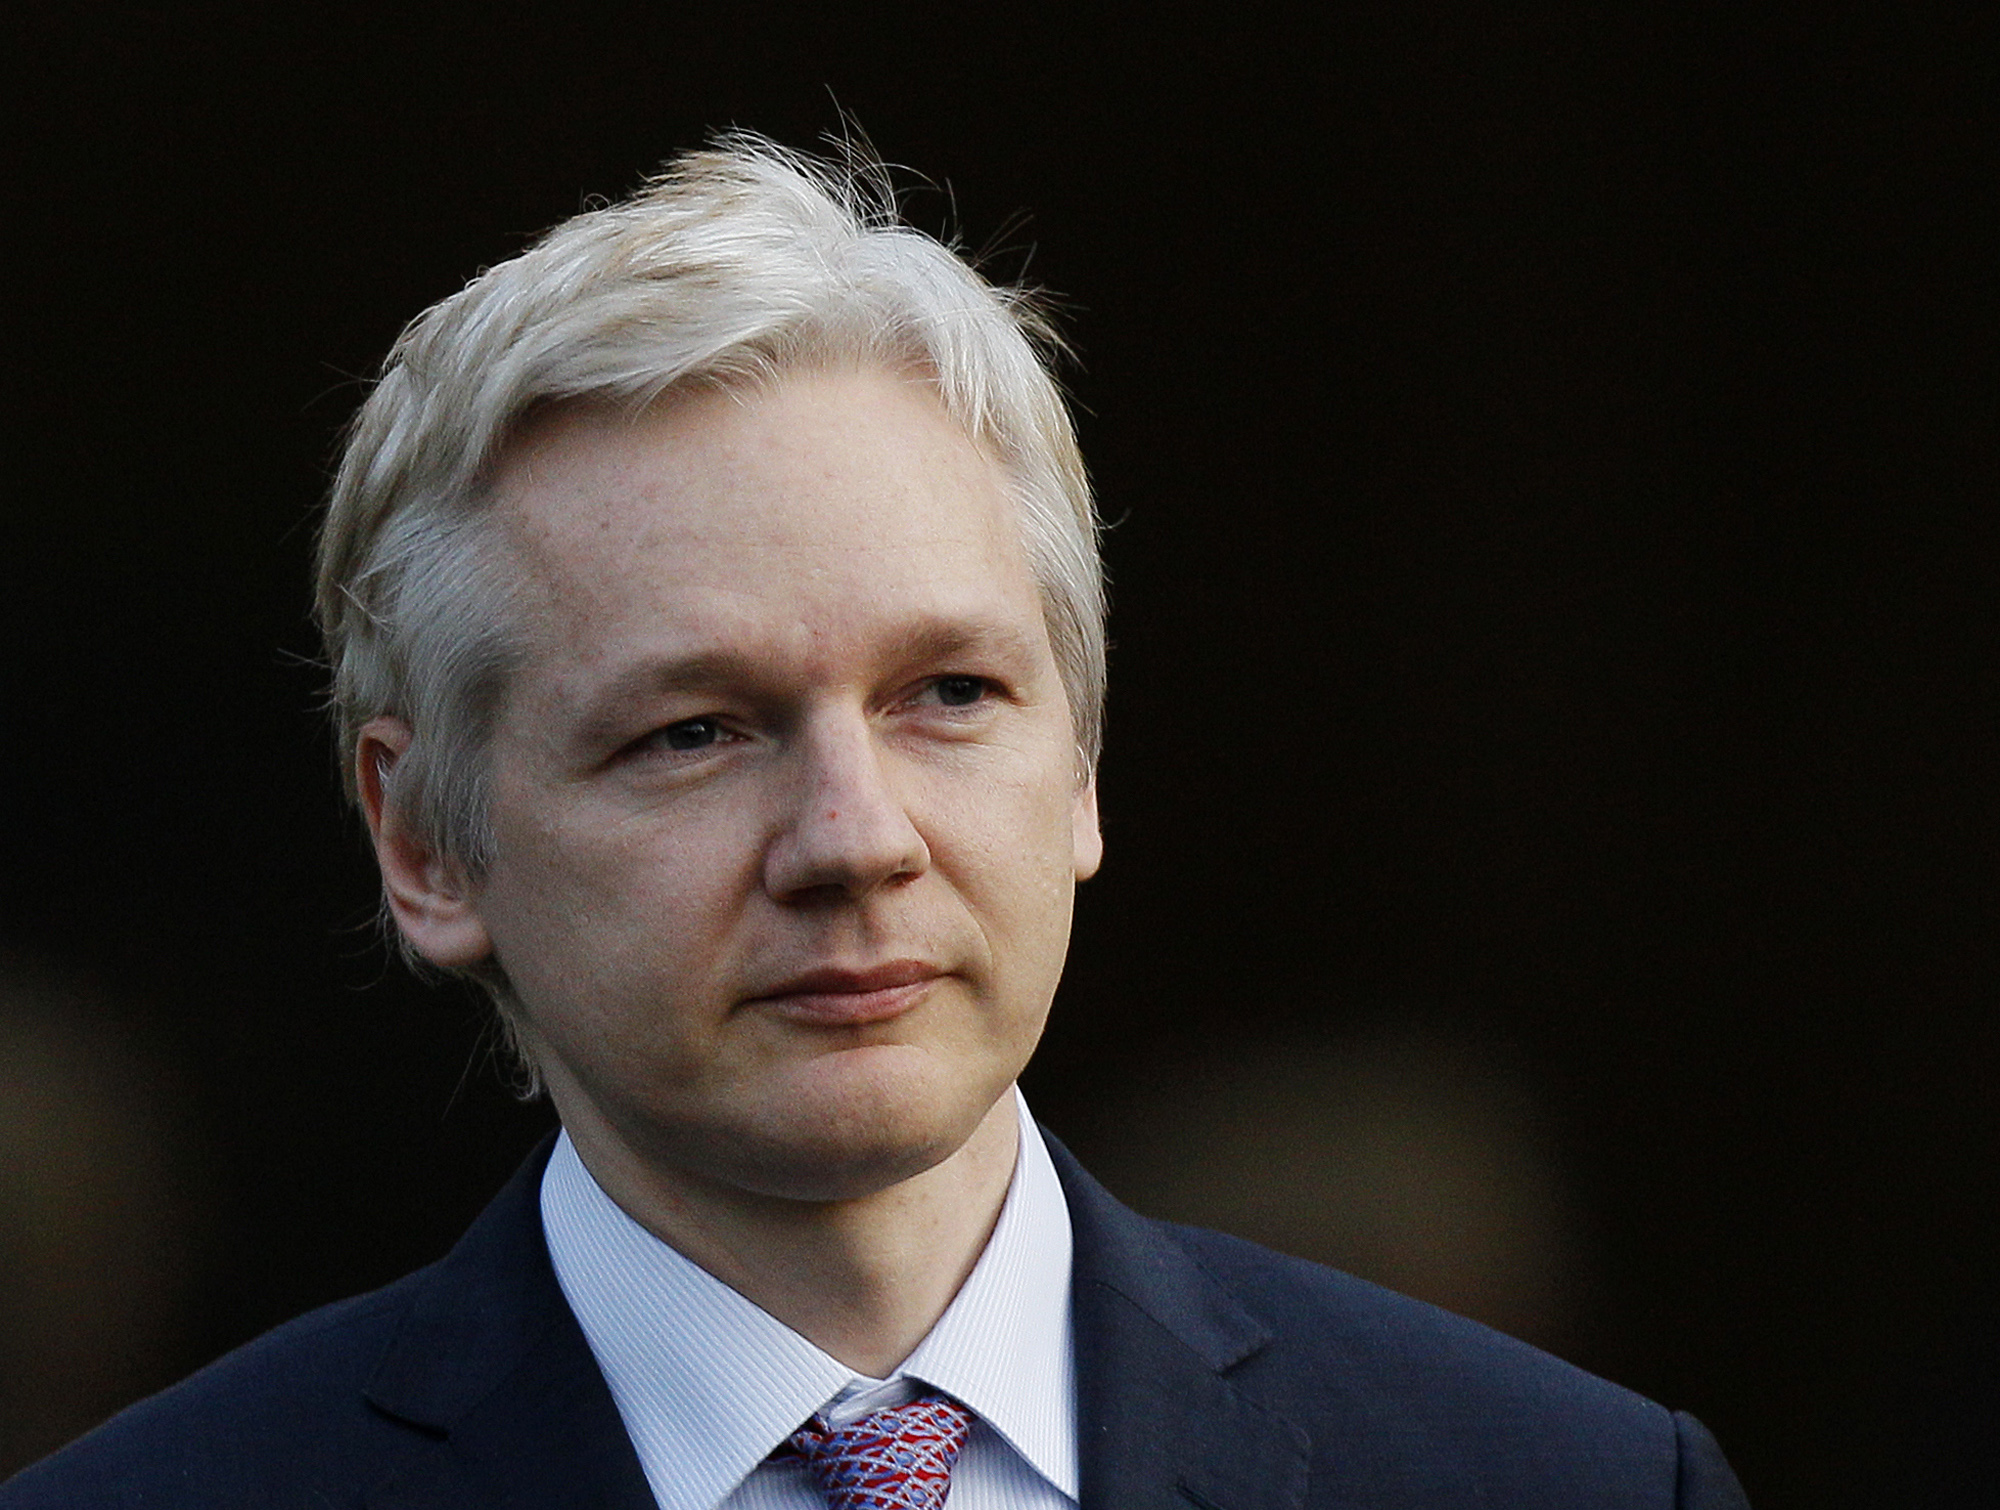 Julian Assange anhölls i sin frånvaro misstänkt för våldtäkt och sexuellt ofredande i augusti 2010. Anhållandet hävdes dock ett knappt dygn senare.